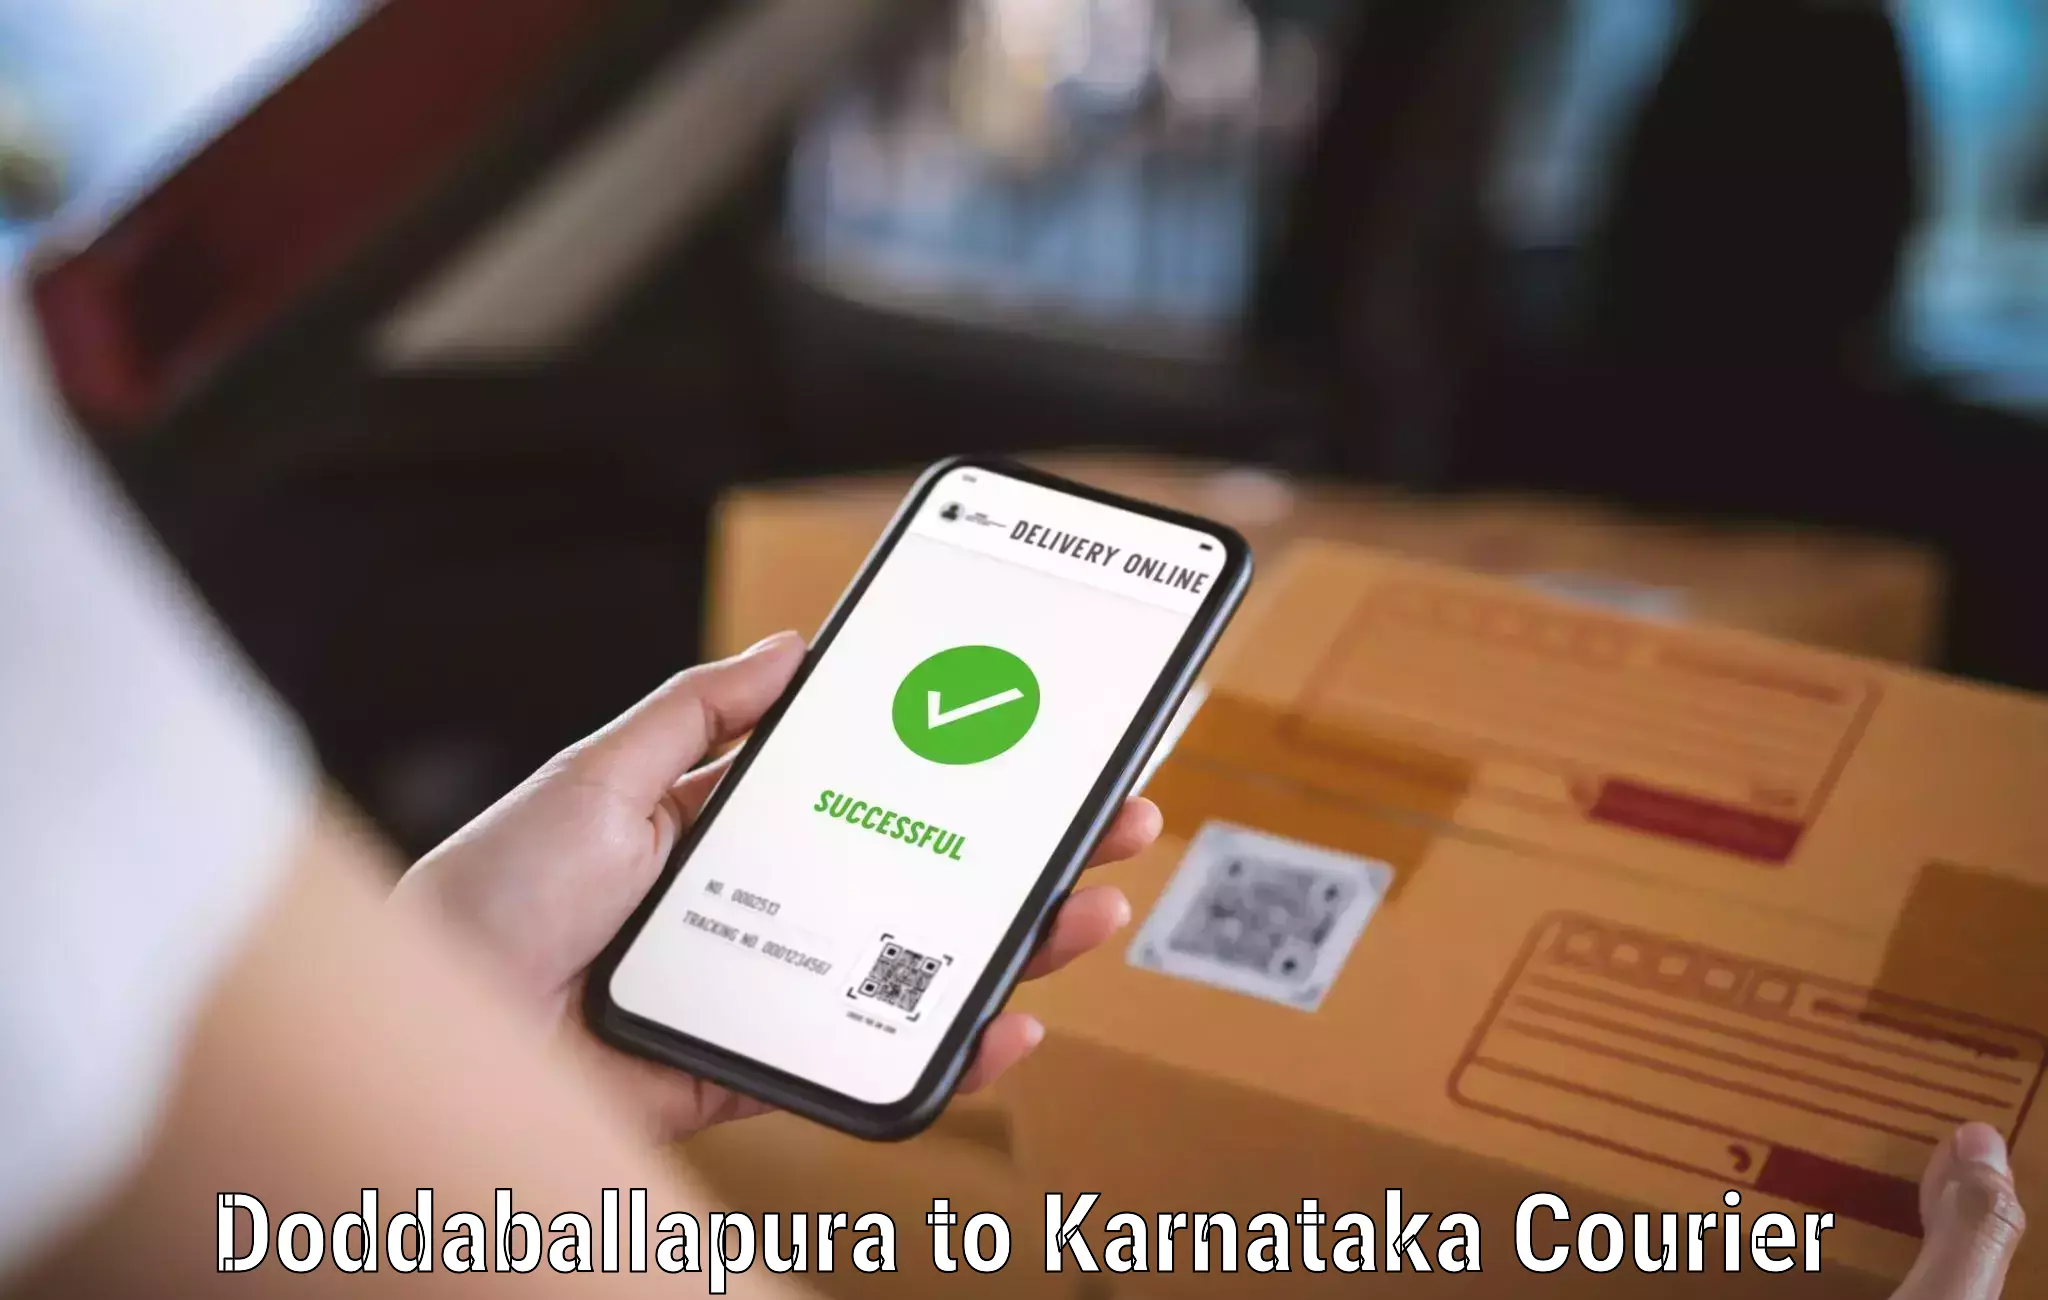 Specialized shipment handling Doddaballapura to Karnataka